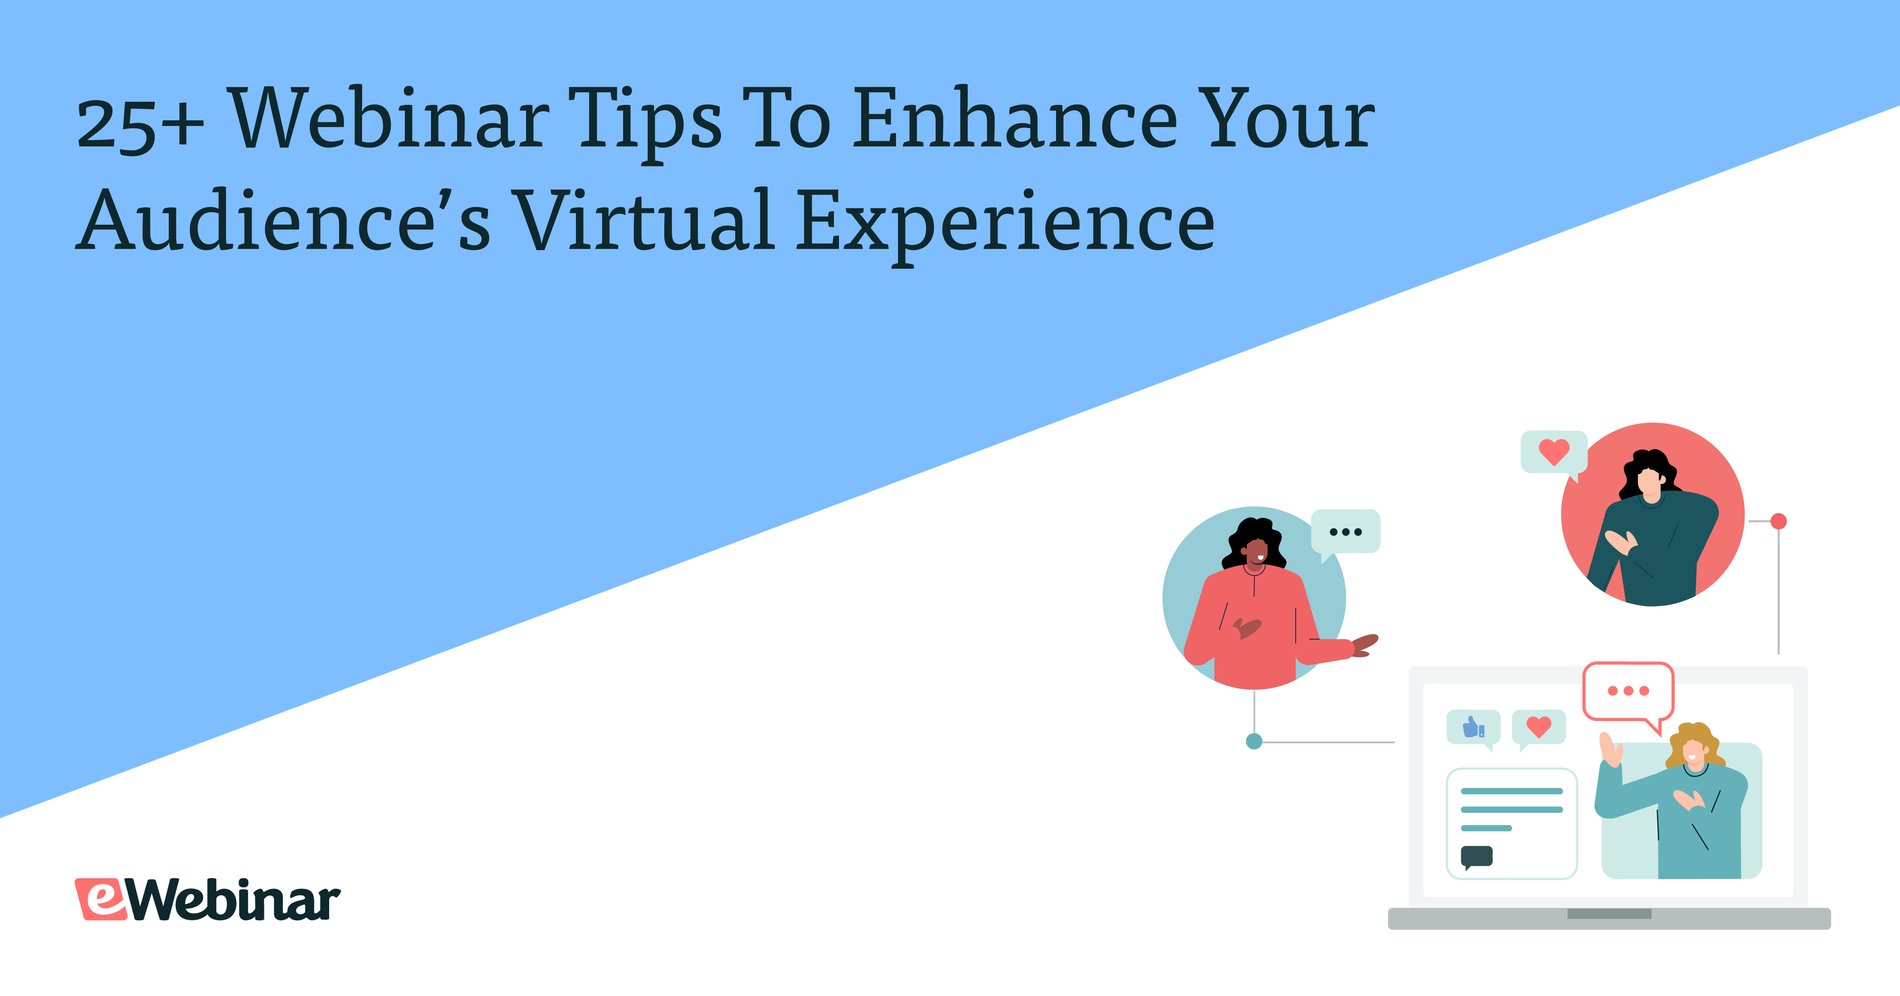 Más de 25 consejos sobre seminarios web para mejorar la experiencia virtual de su audiencia